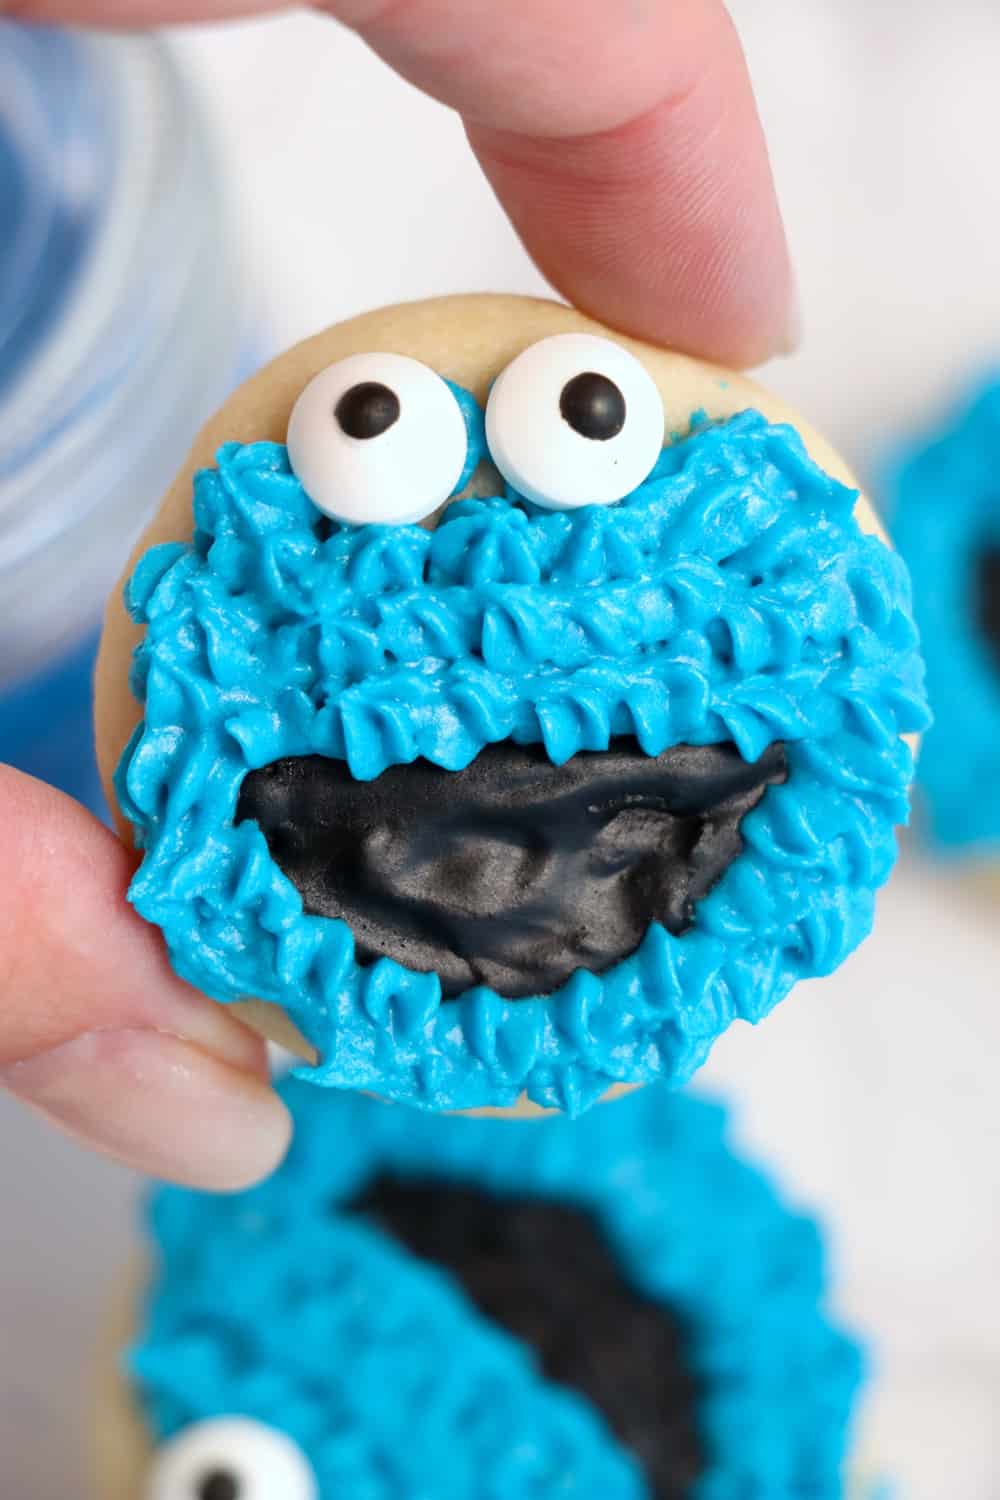 Cookie Monster Cookies